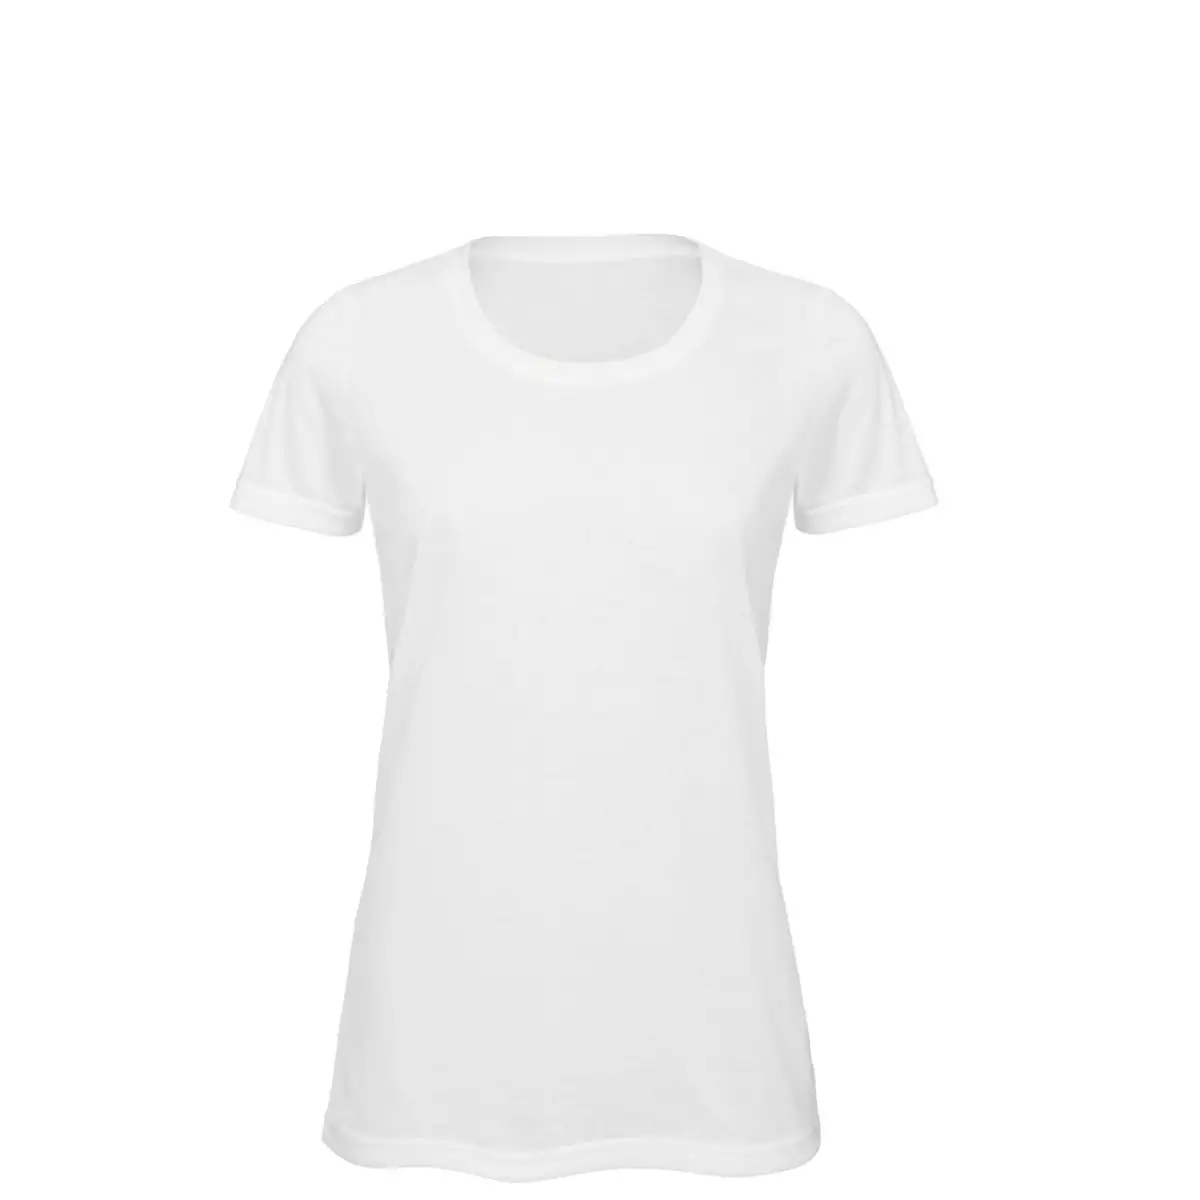 T-Shirt Manica Corta Donna Poliestere Personalizzata - B&C Collection 